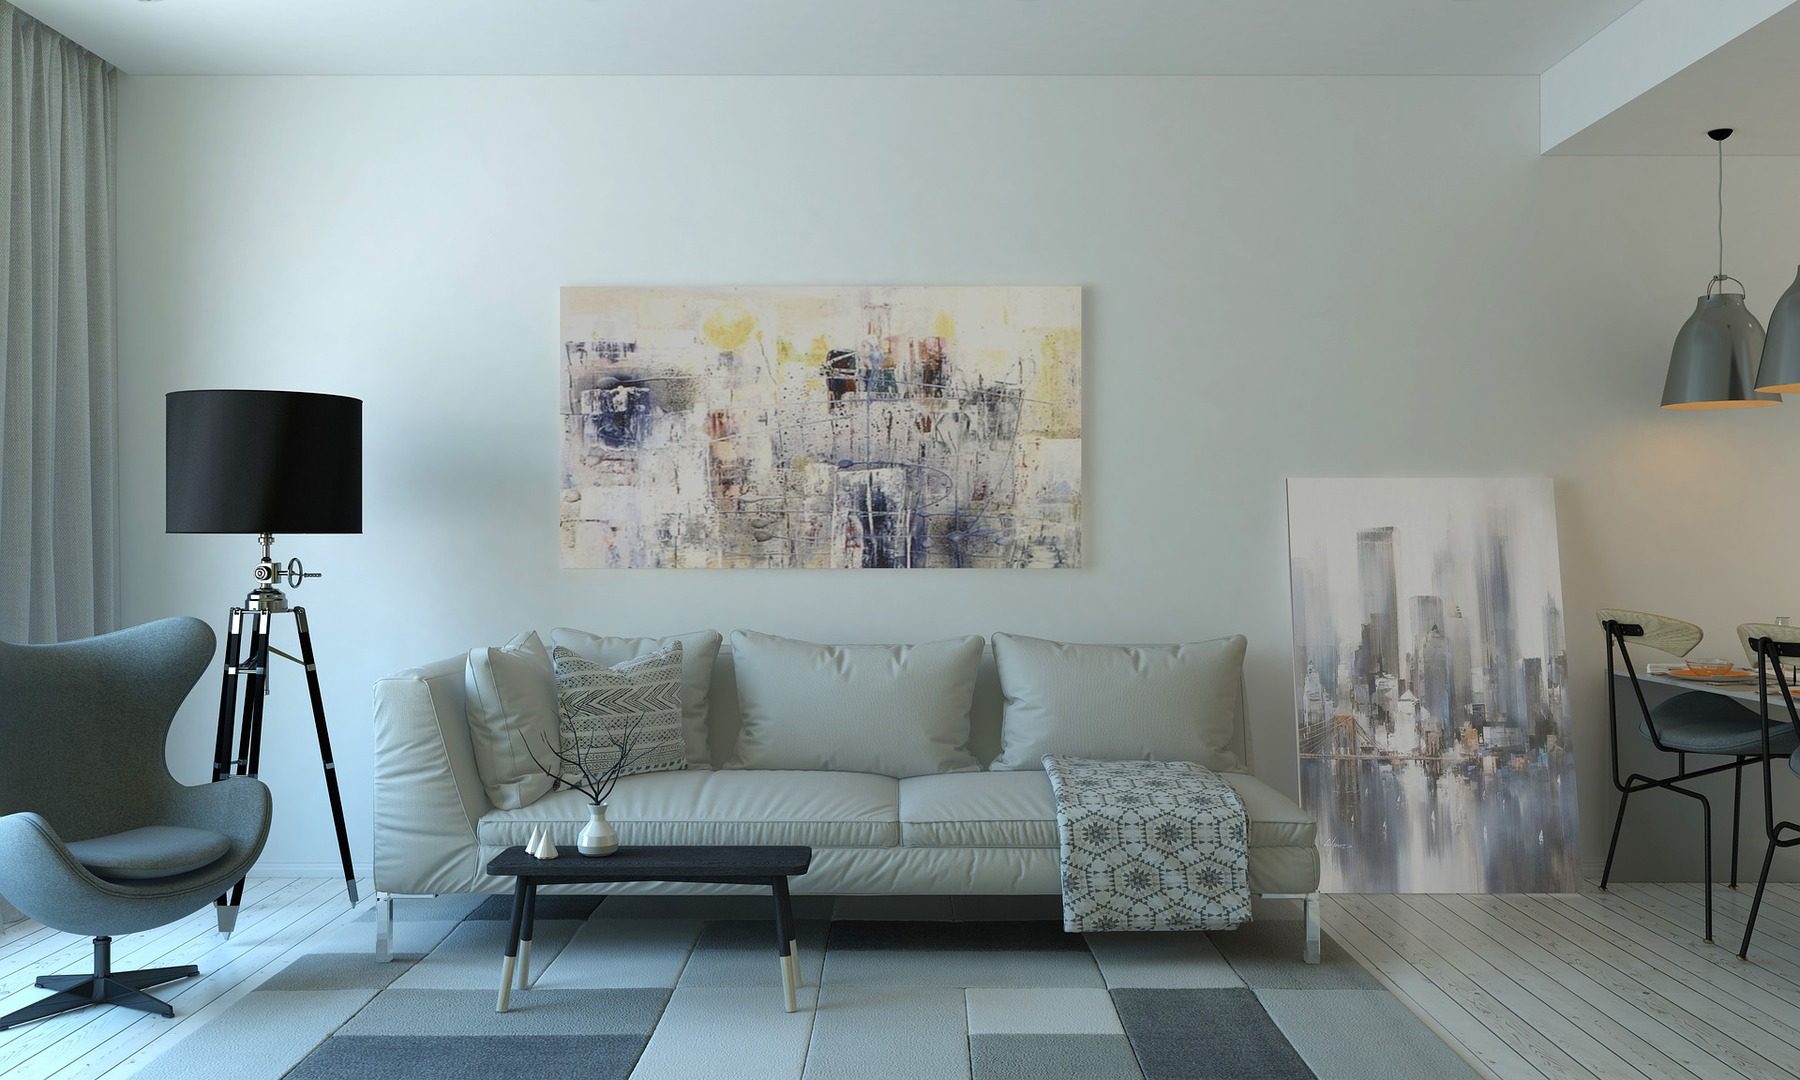 Helle Farben und funktionale Möbel sorgen in kleinen Räumen für eine Wohlfühlatmosphäre.